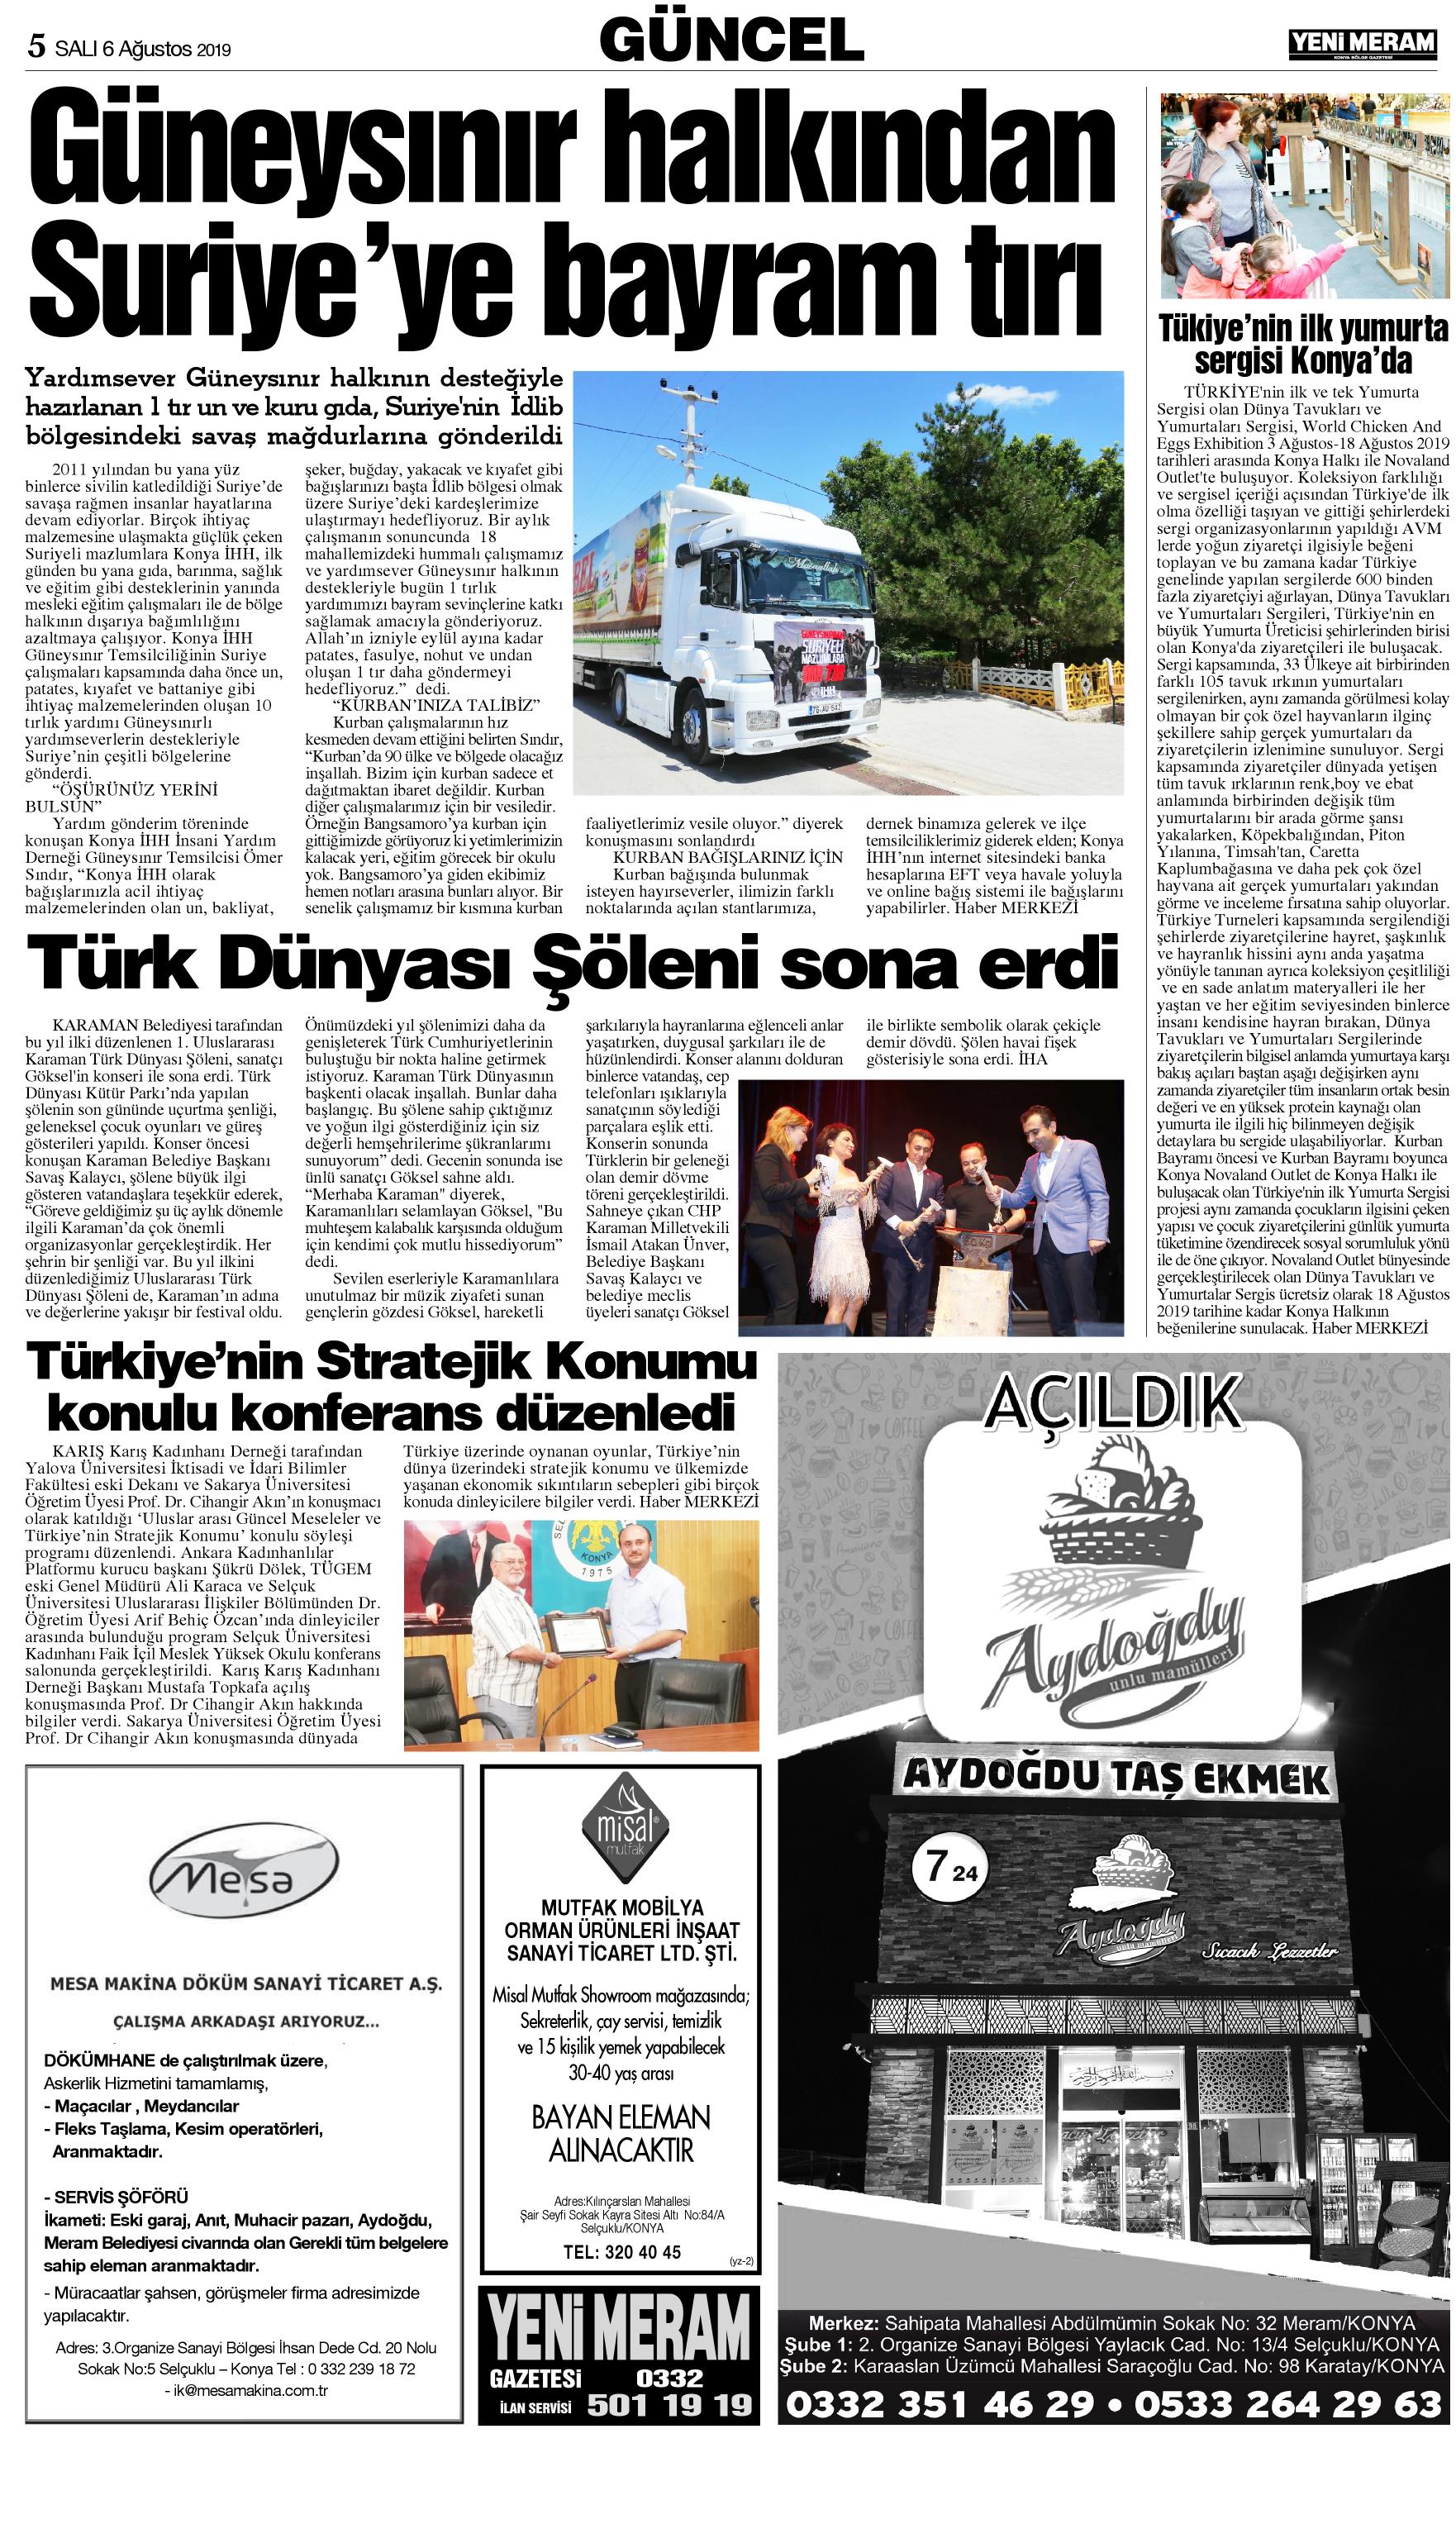 6 Ağustos 2019 Yeni Meram Gazetesi